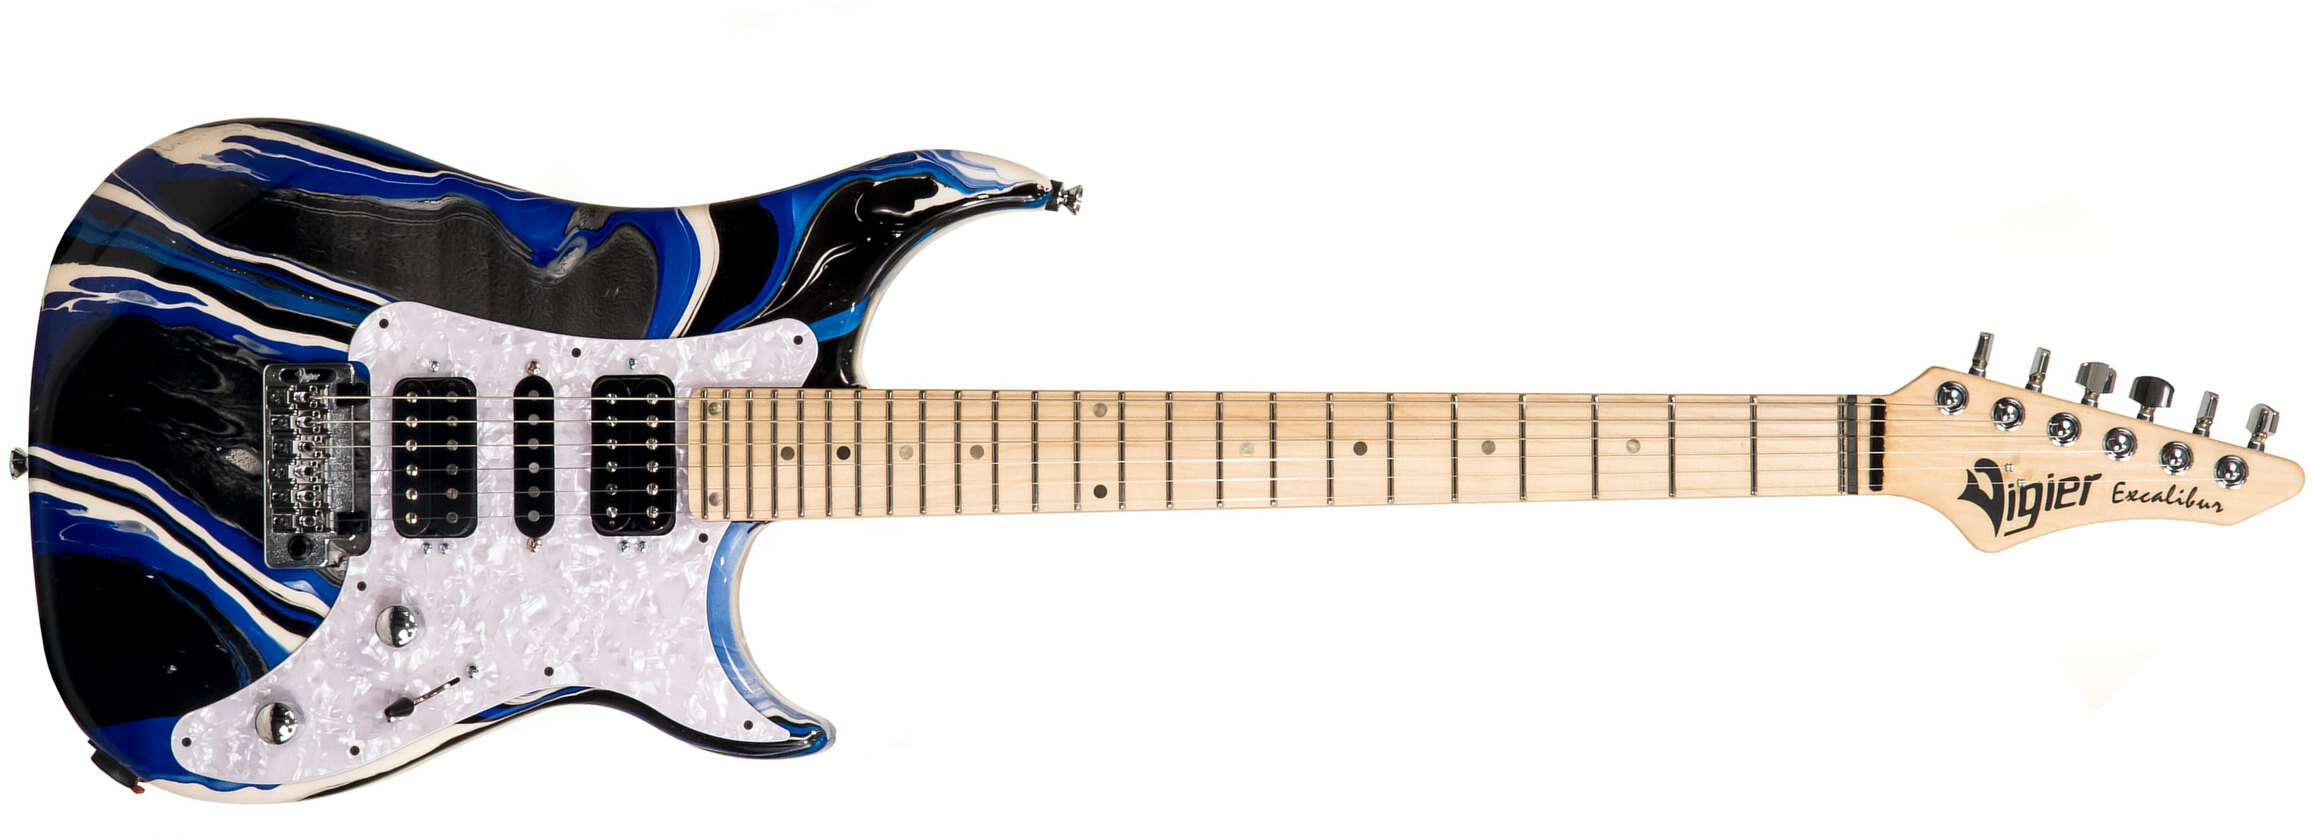 Vigier Excalibur Supraa Hsh Trem Mn - Rock Art Blue White Black - Double cut electric guitar - Main picture